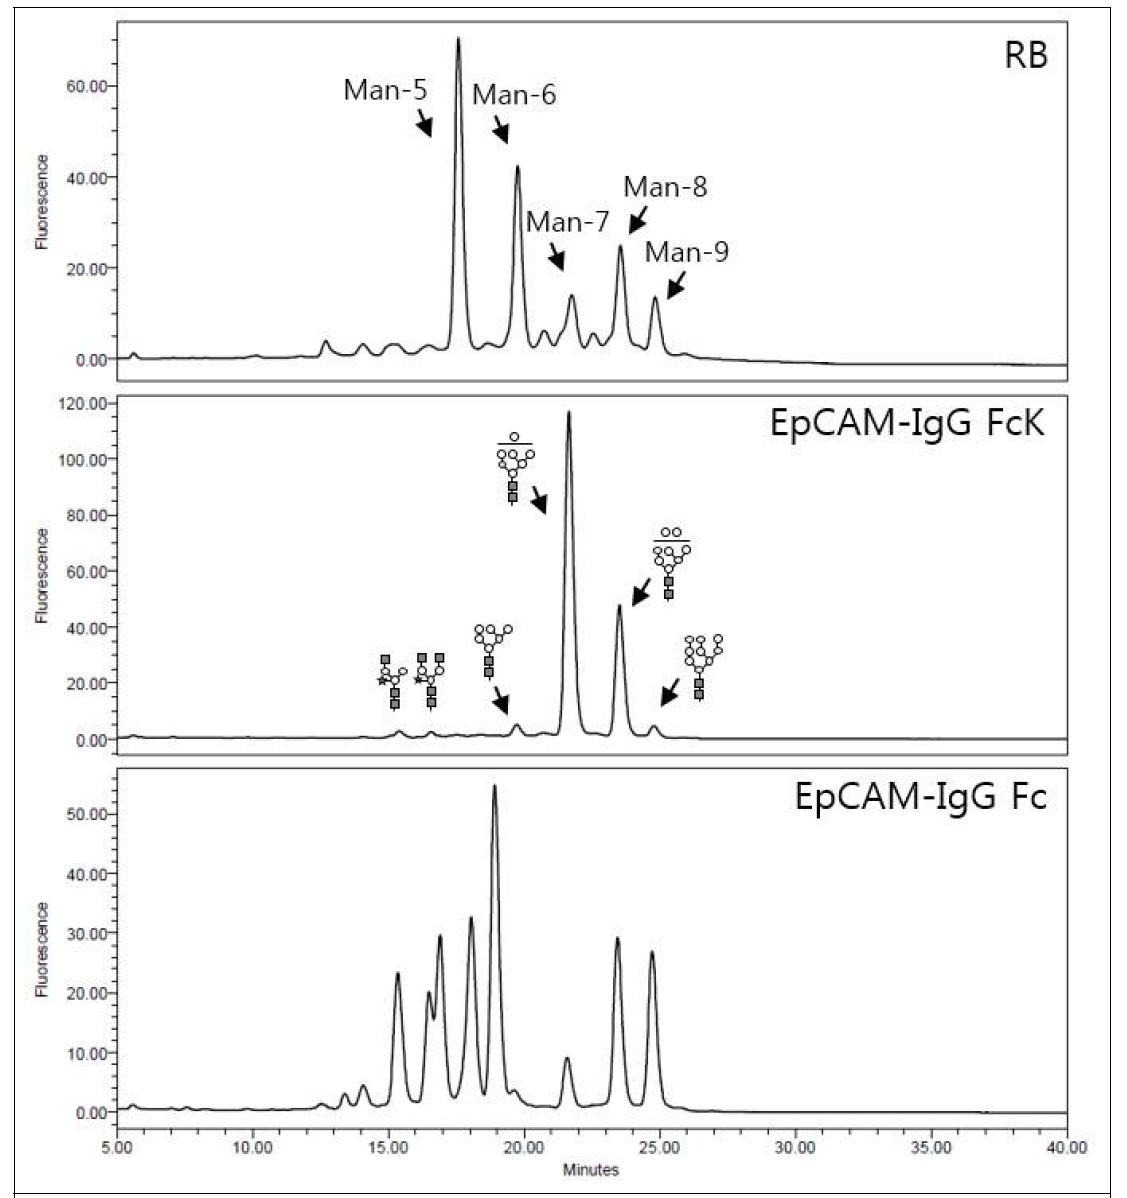 정제된 EpCAM-IgG Fc, EpCAM-IgG FcK 융합백신단백질의 당구조 분석을 위한 HPLC 결과